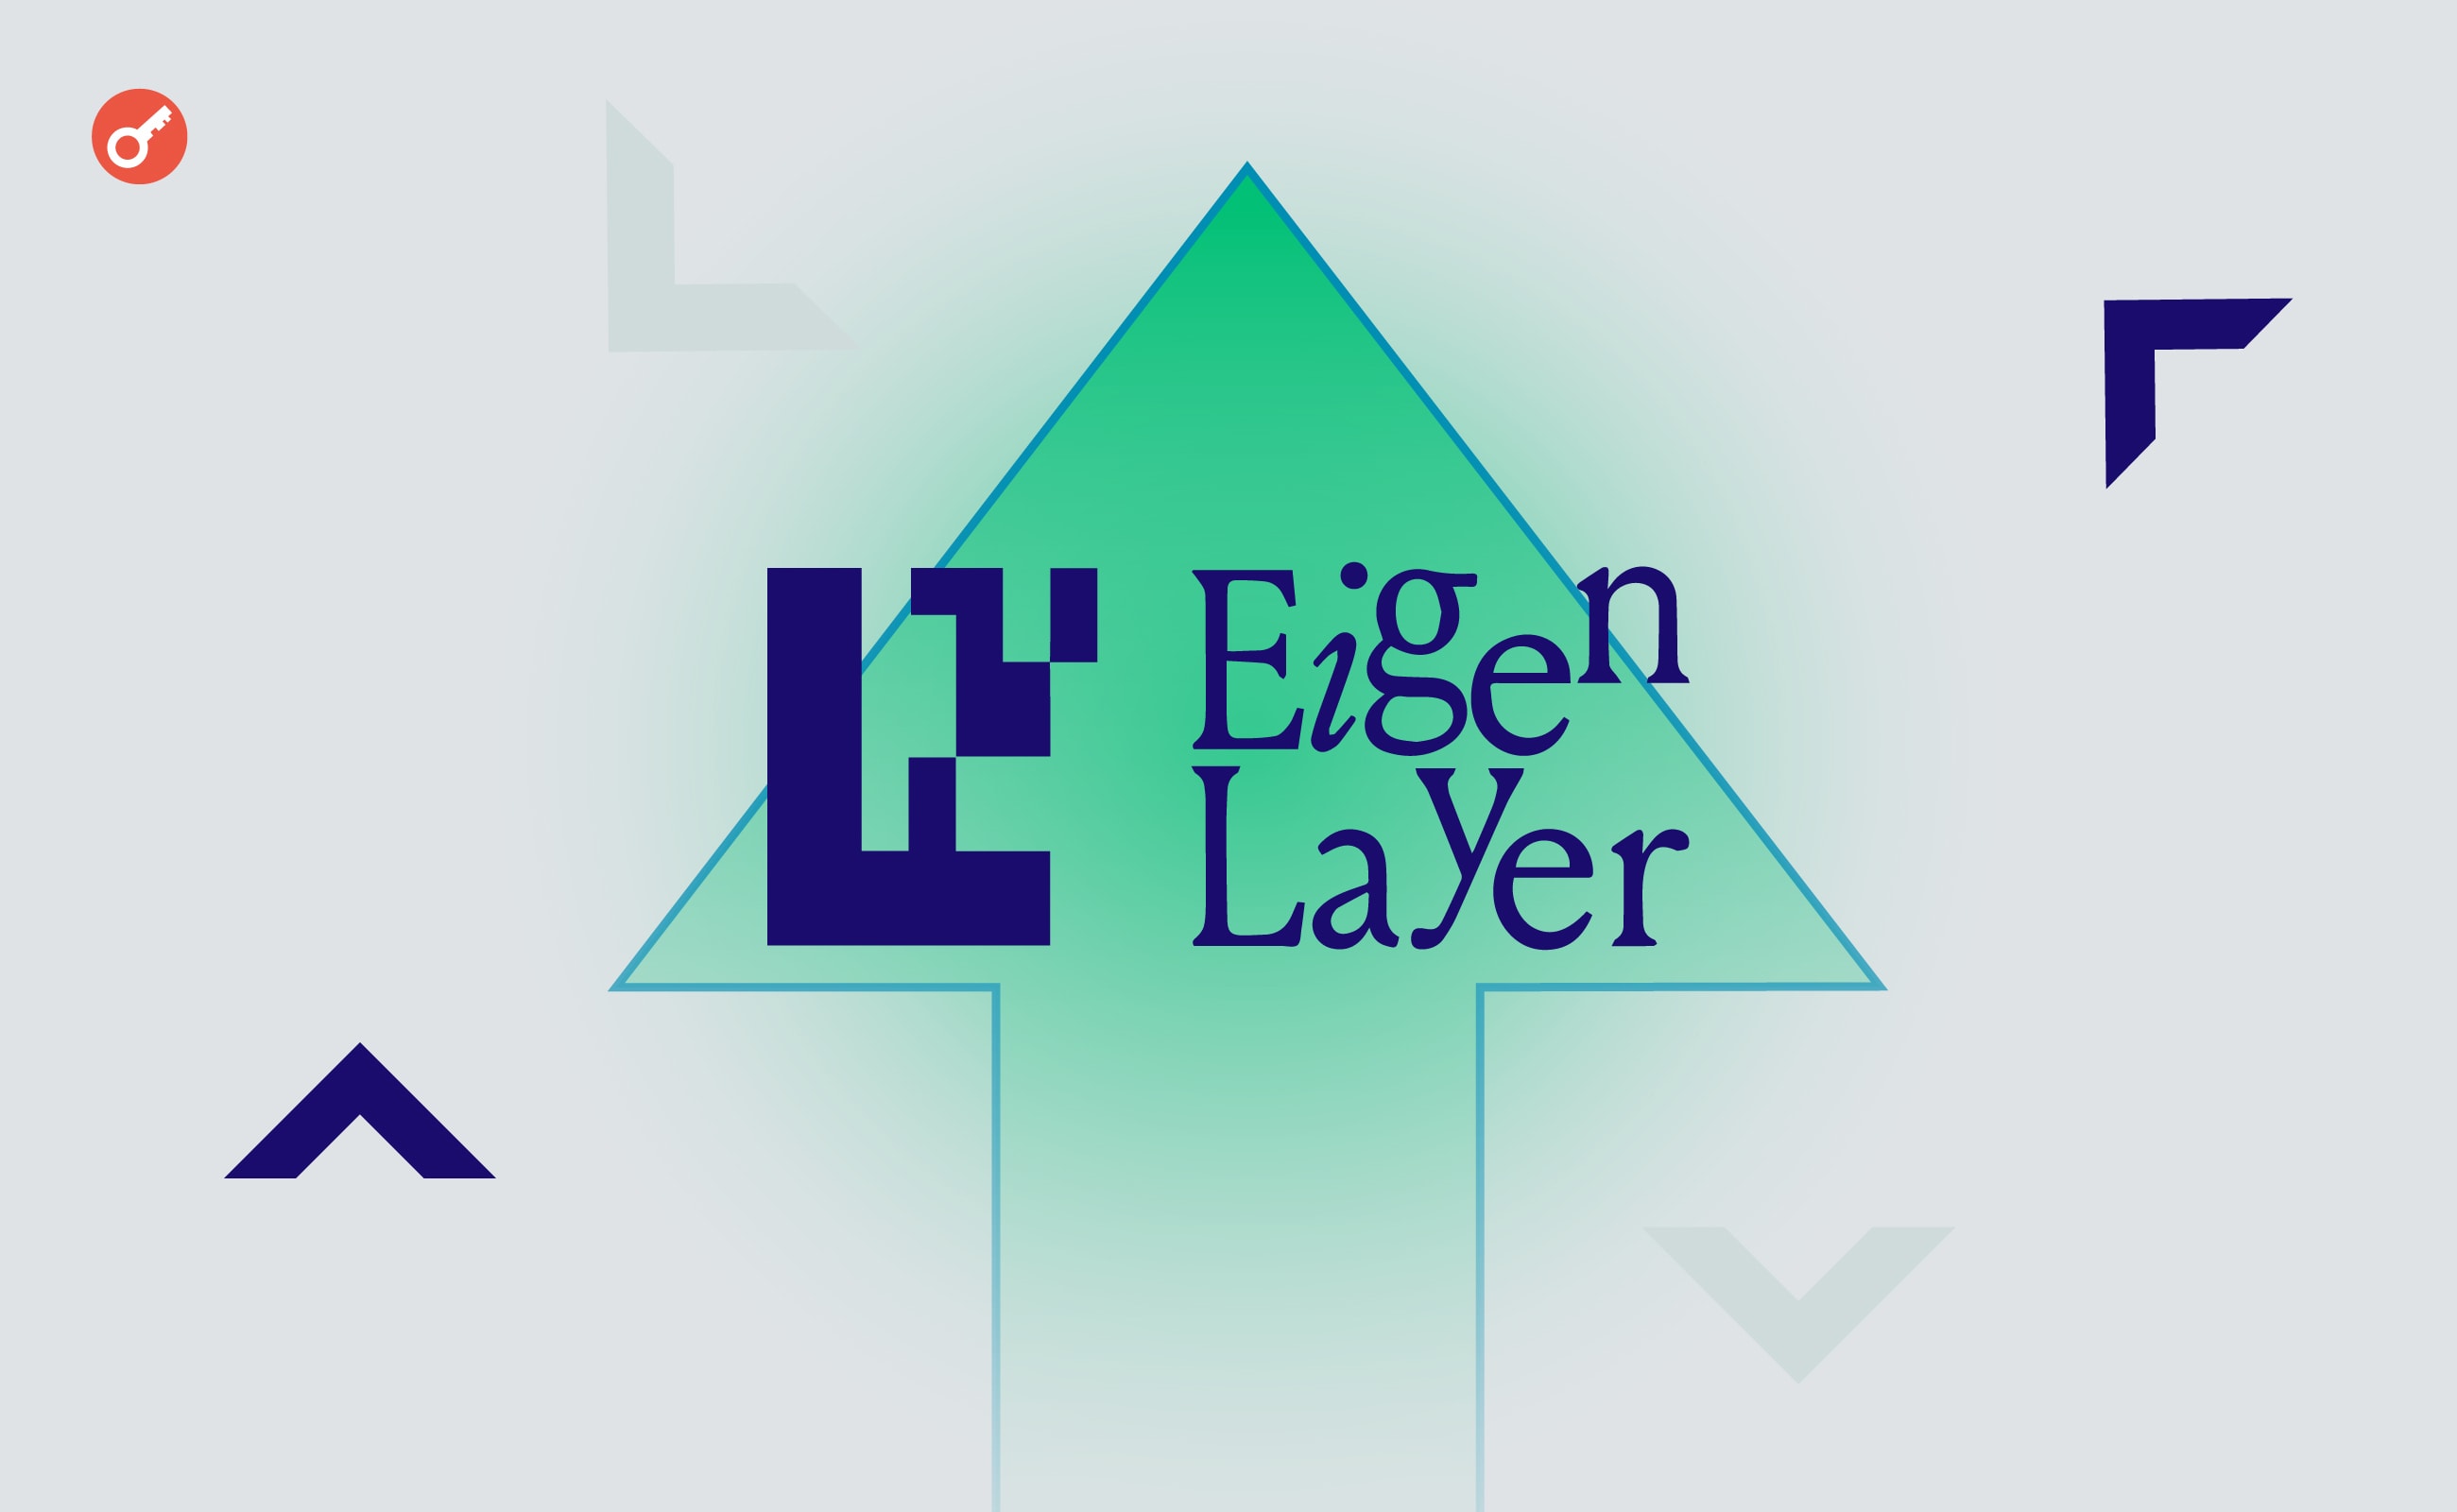 Еще один разработчик Ethereum признался в работе на EigenLayer. Заглавный коллаж новости.